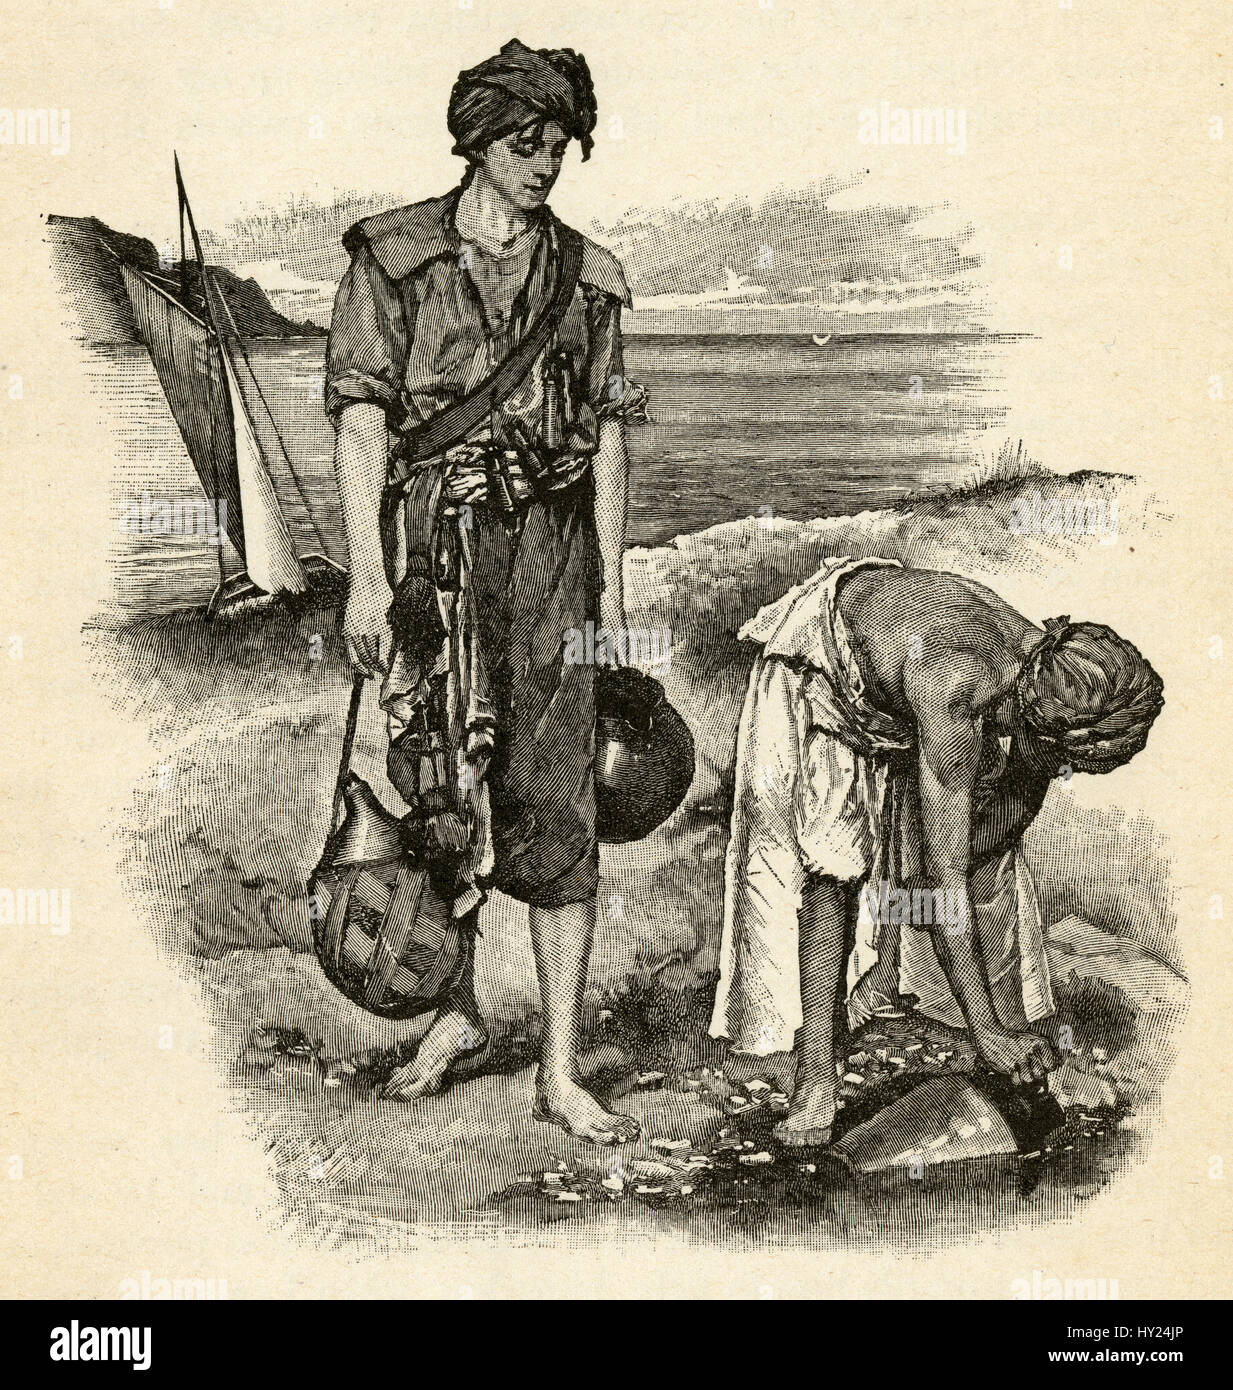 1910s grabado de Robinson Crusoe, de Daniel Defoe: "llenamos nuestros tarros.' ilustrada por Walter Paget. Foto de stock